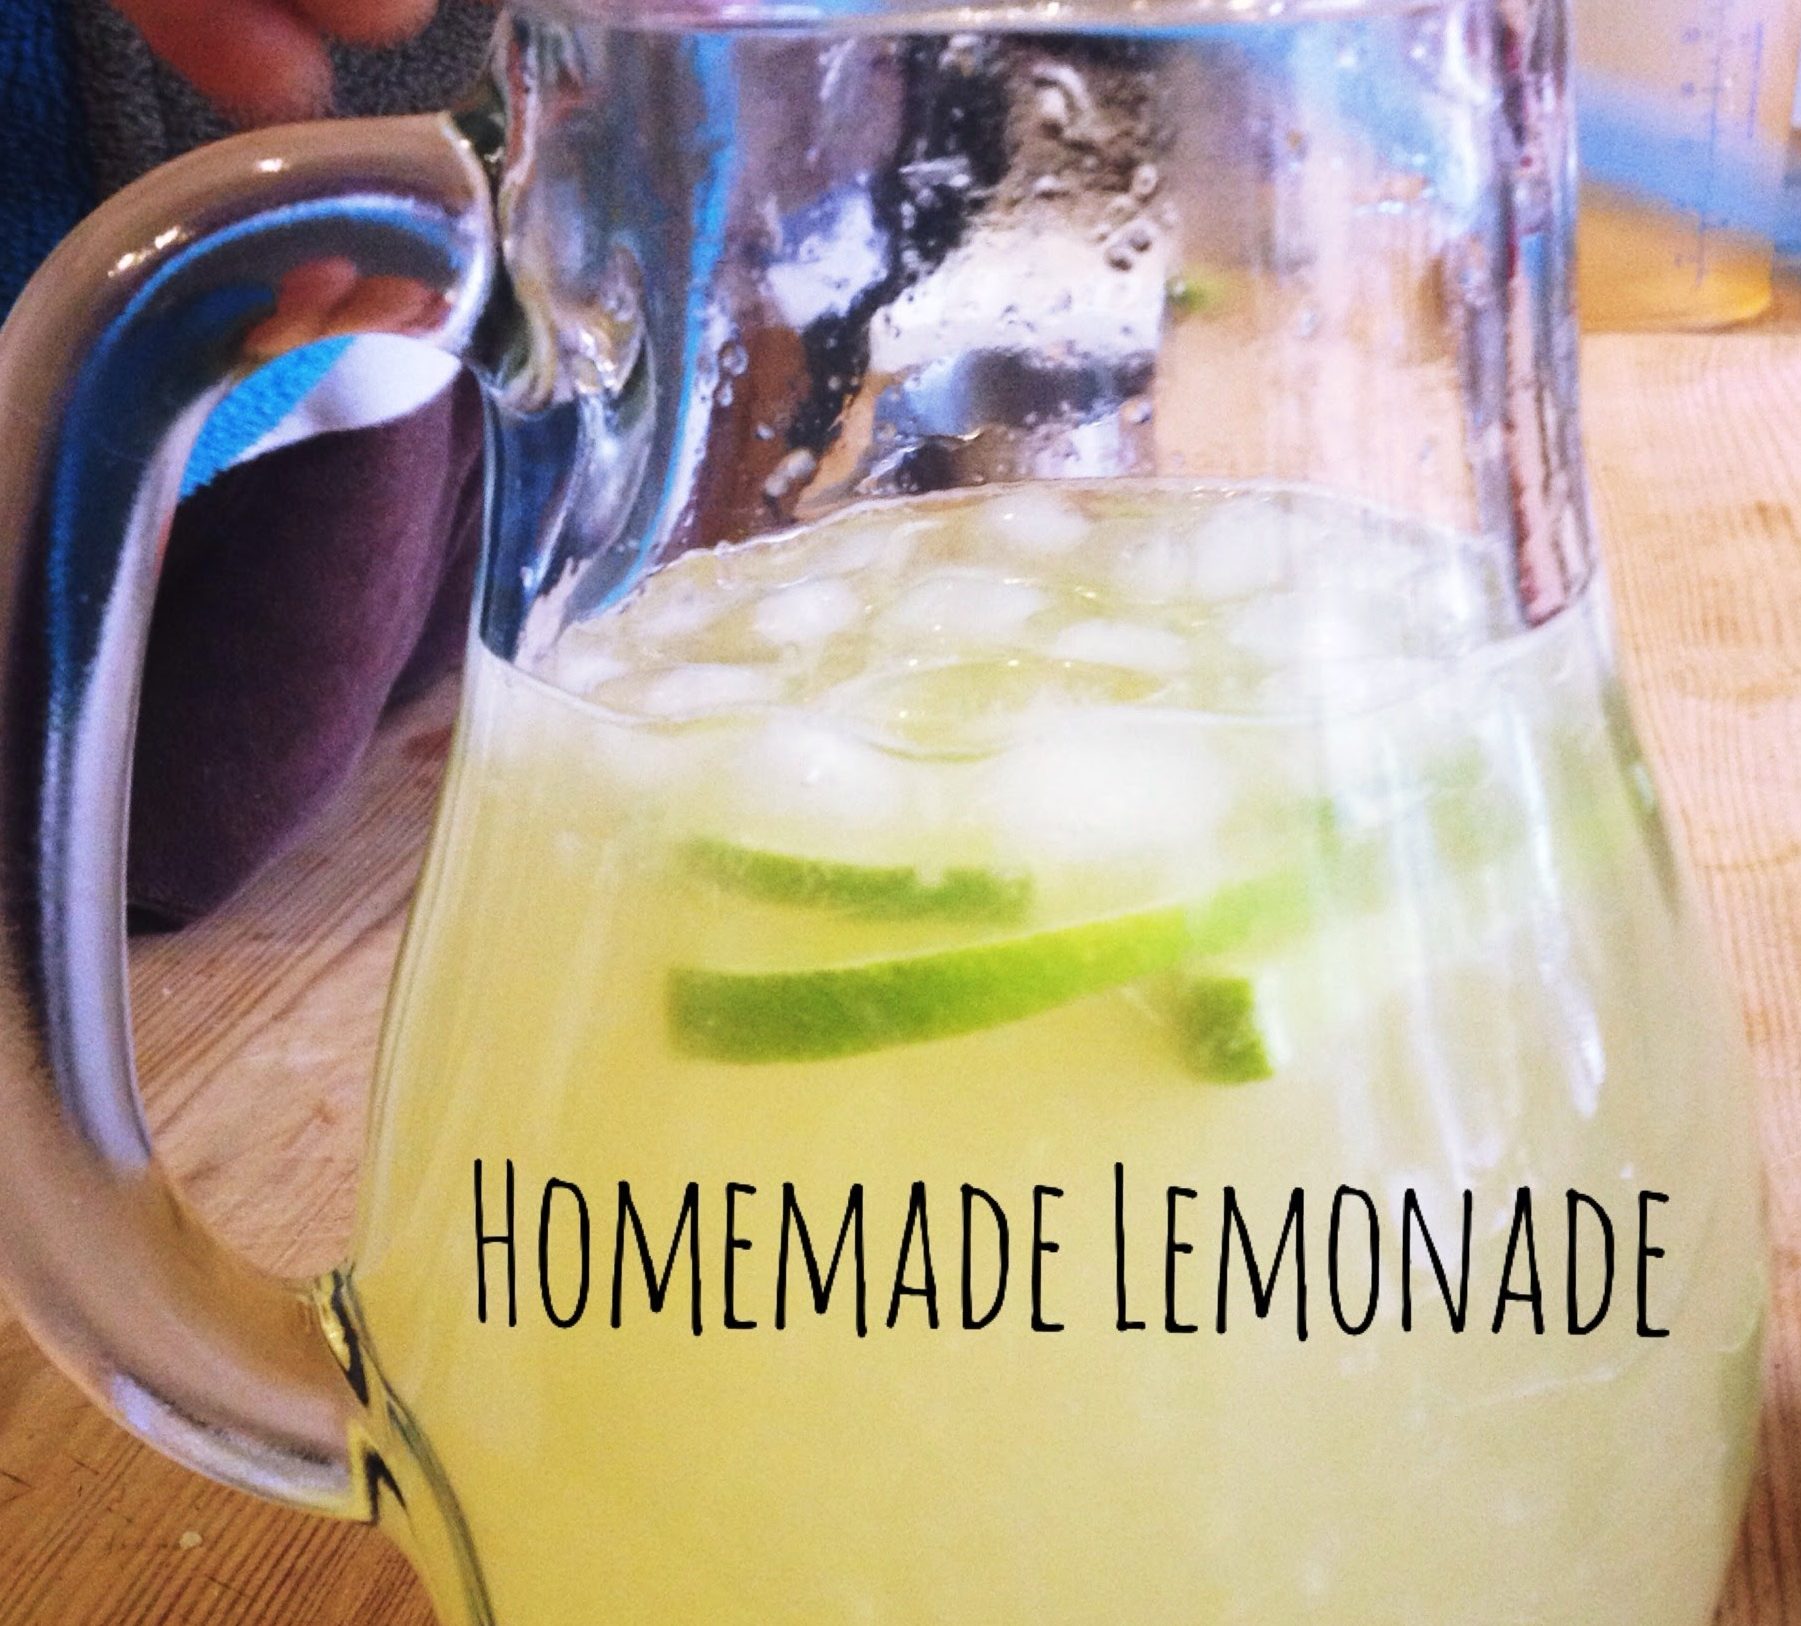 A glass jug of homemade lemonade